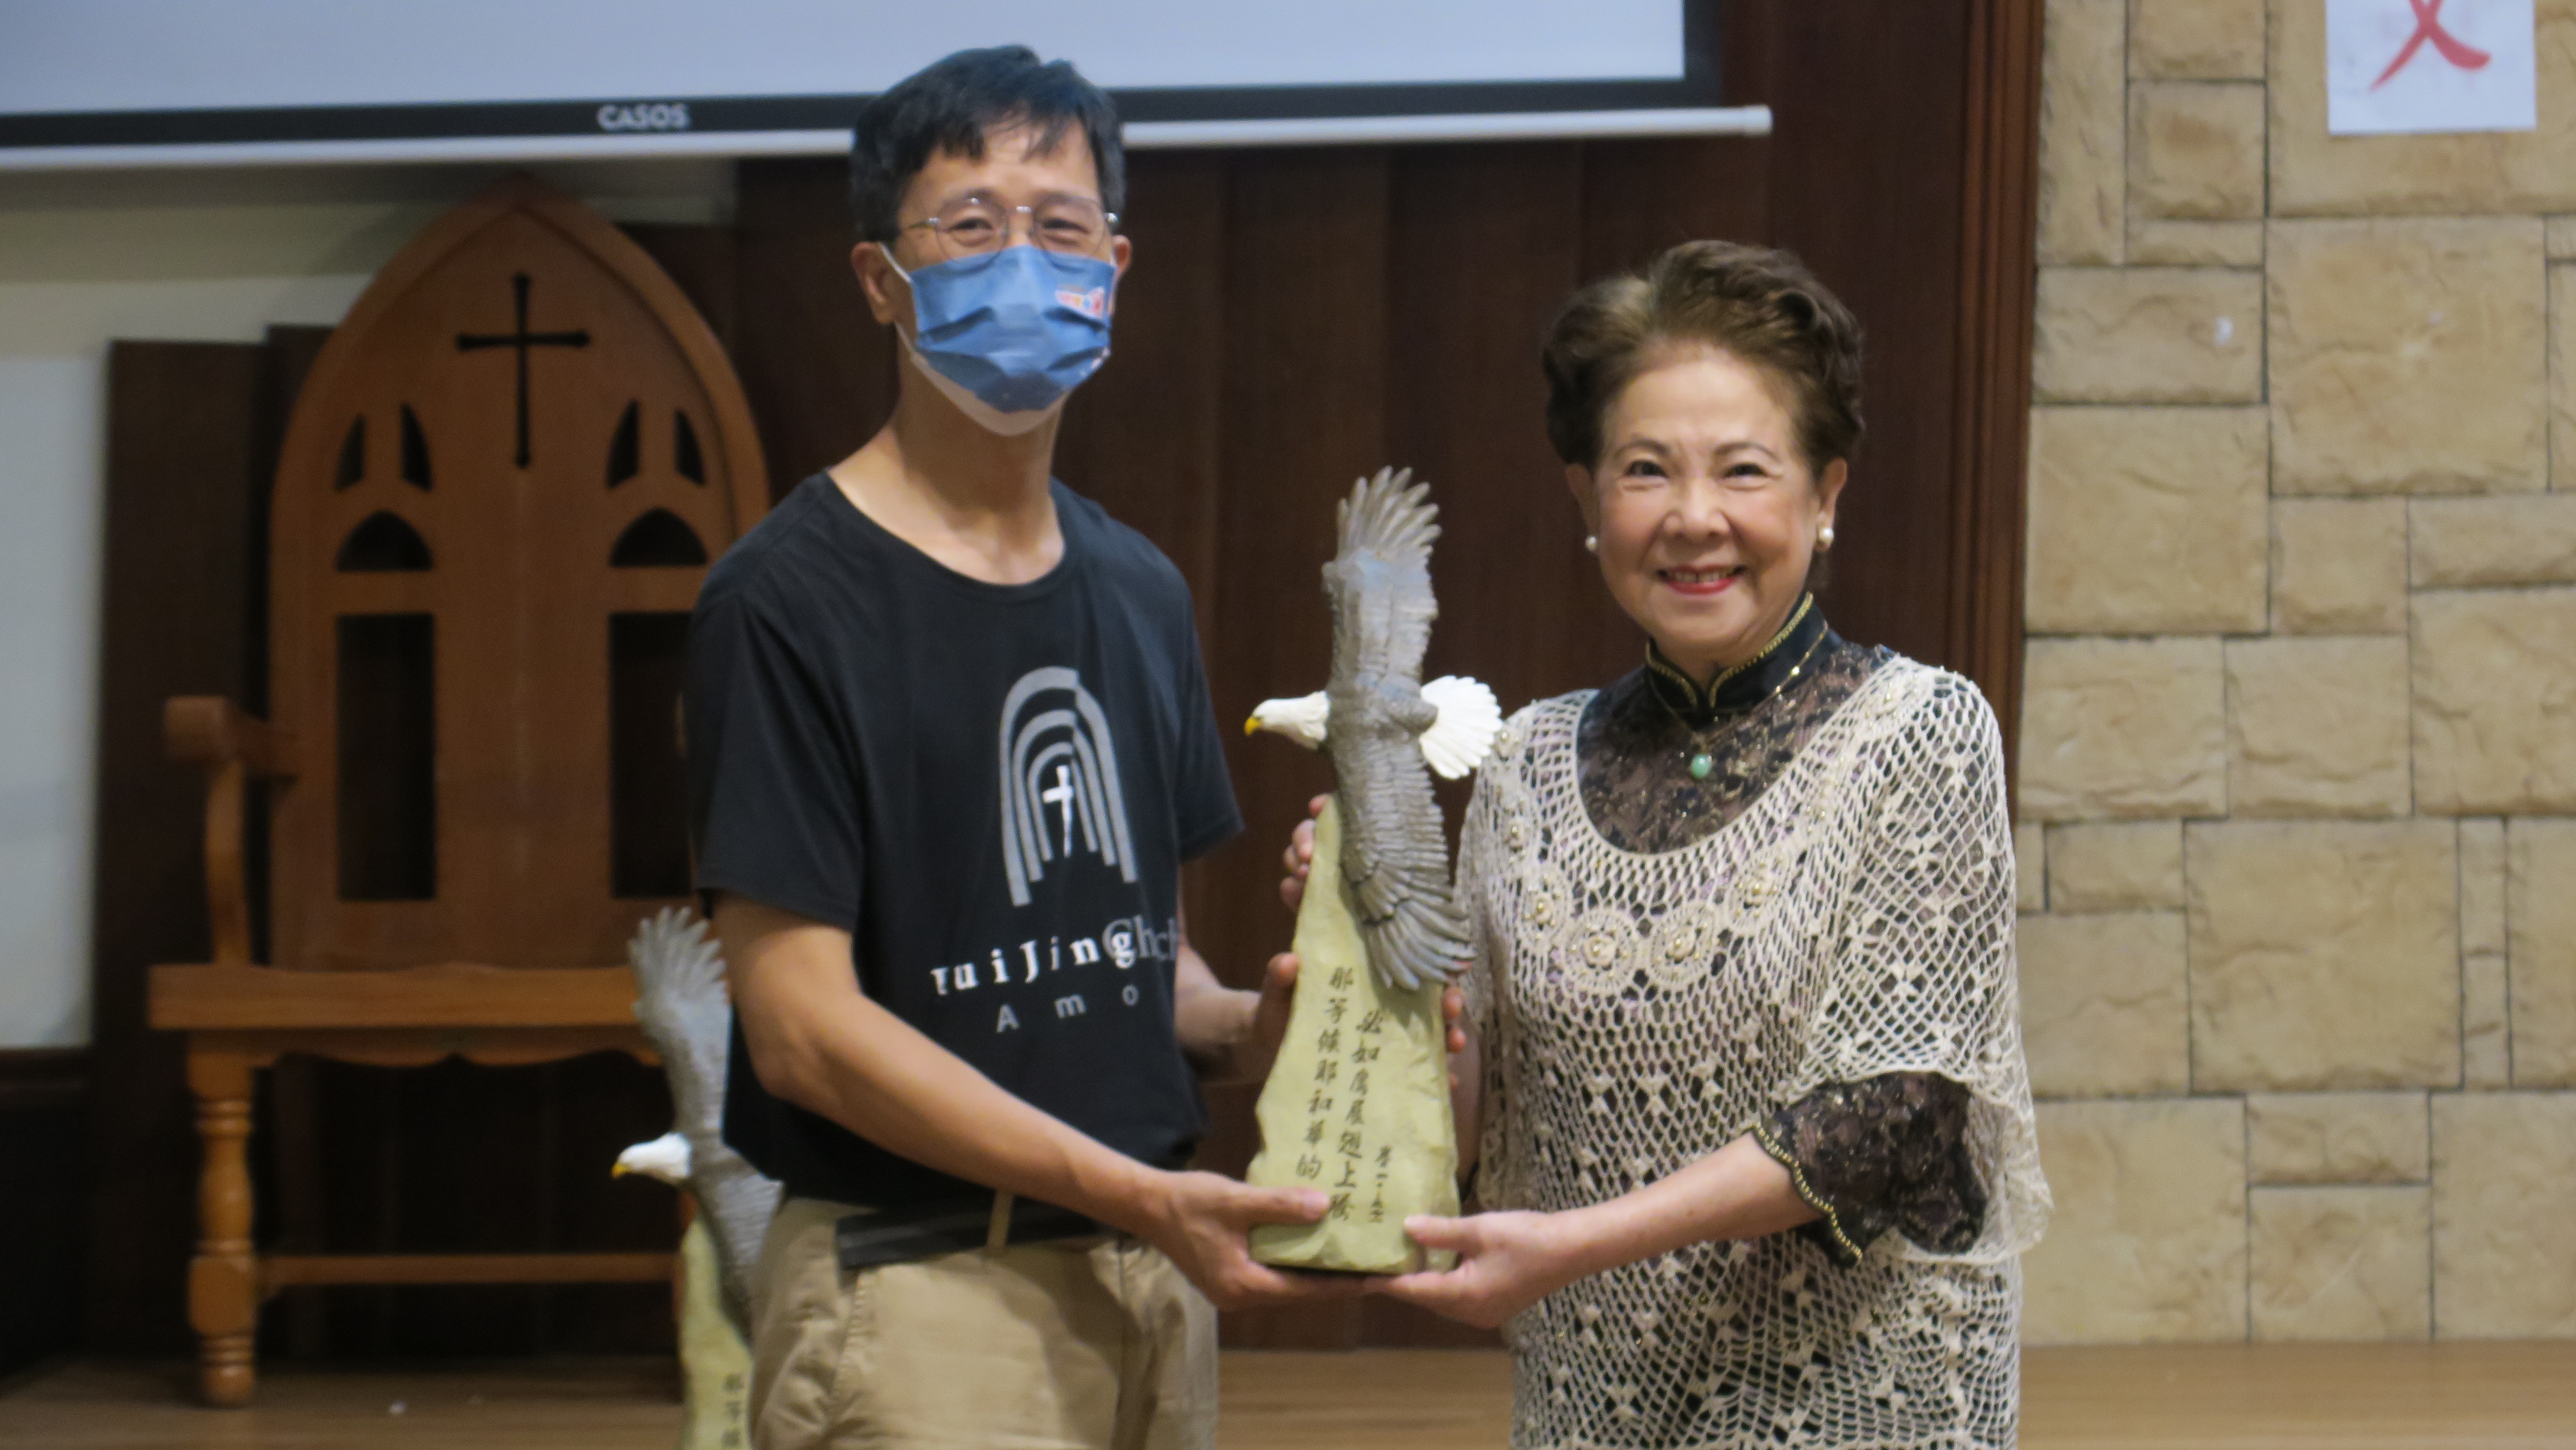 陳瑞枝牧師用論壇報的老鷹送給協辦的李坤南牧師